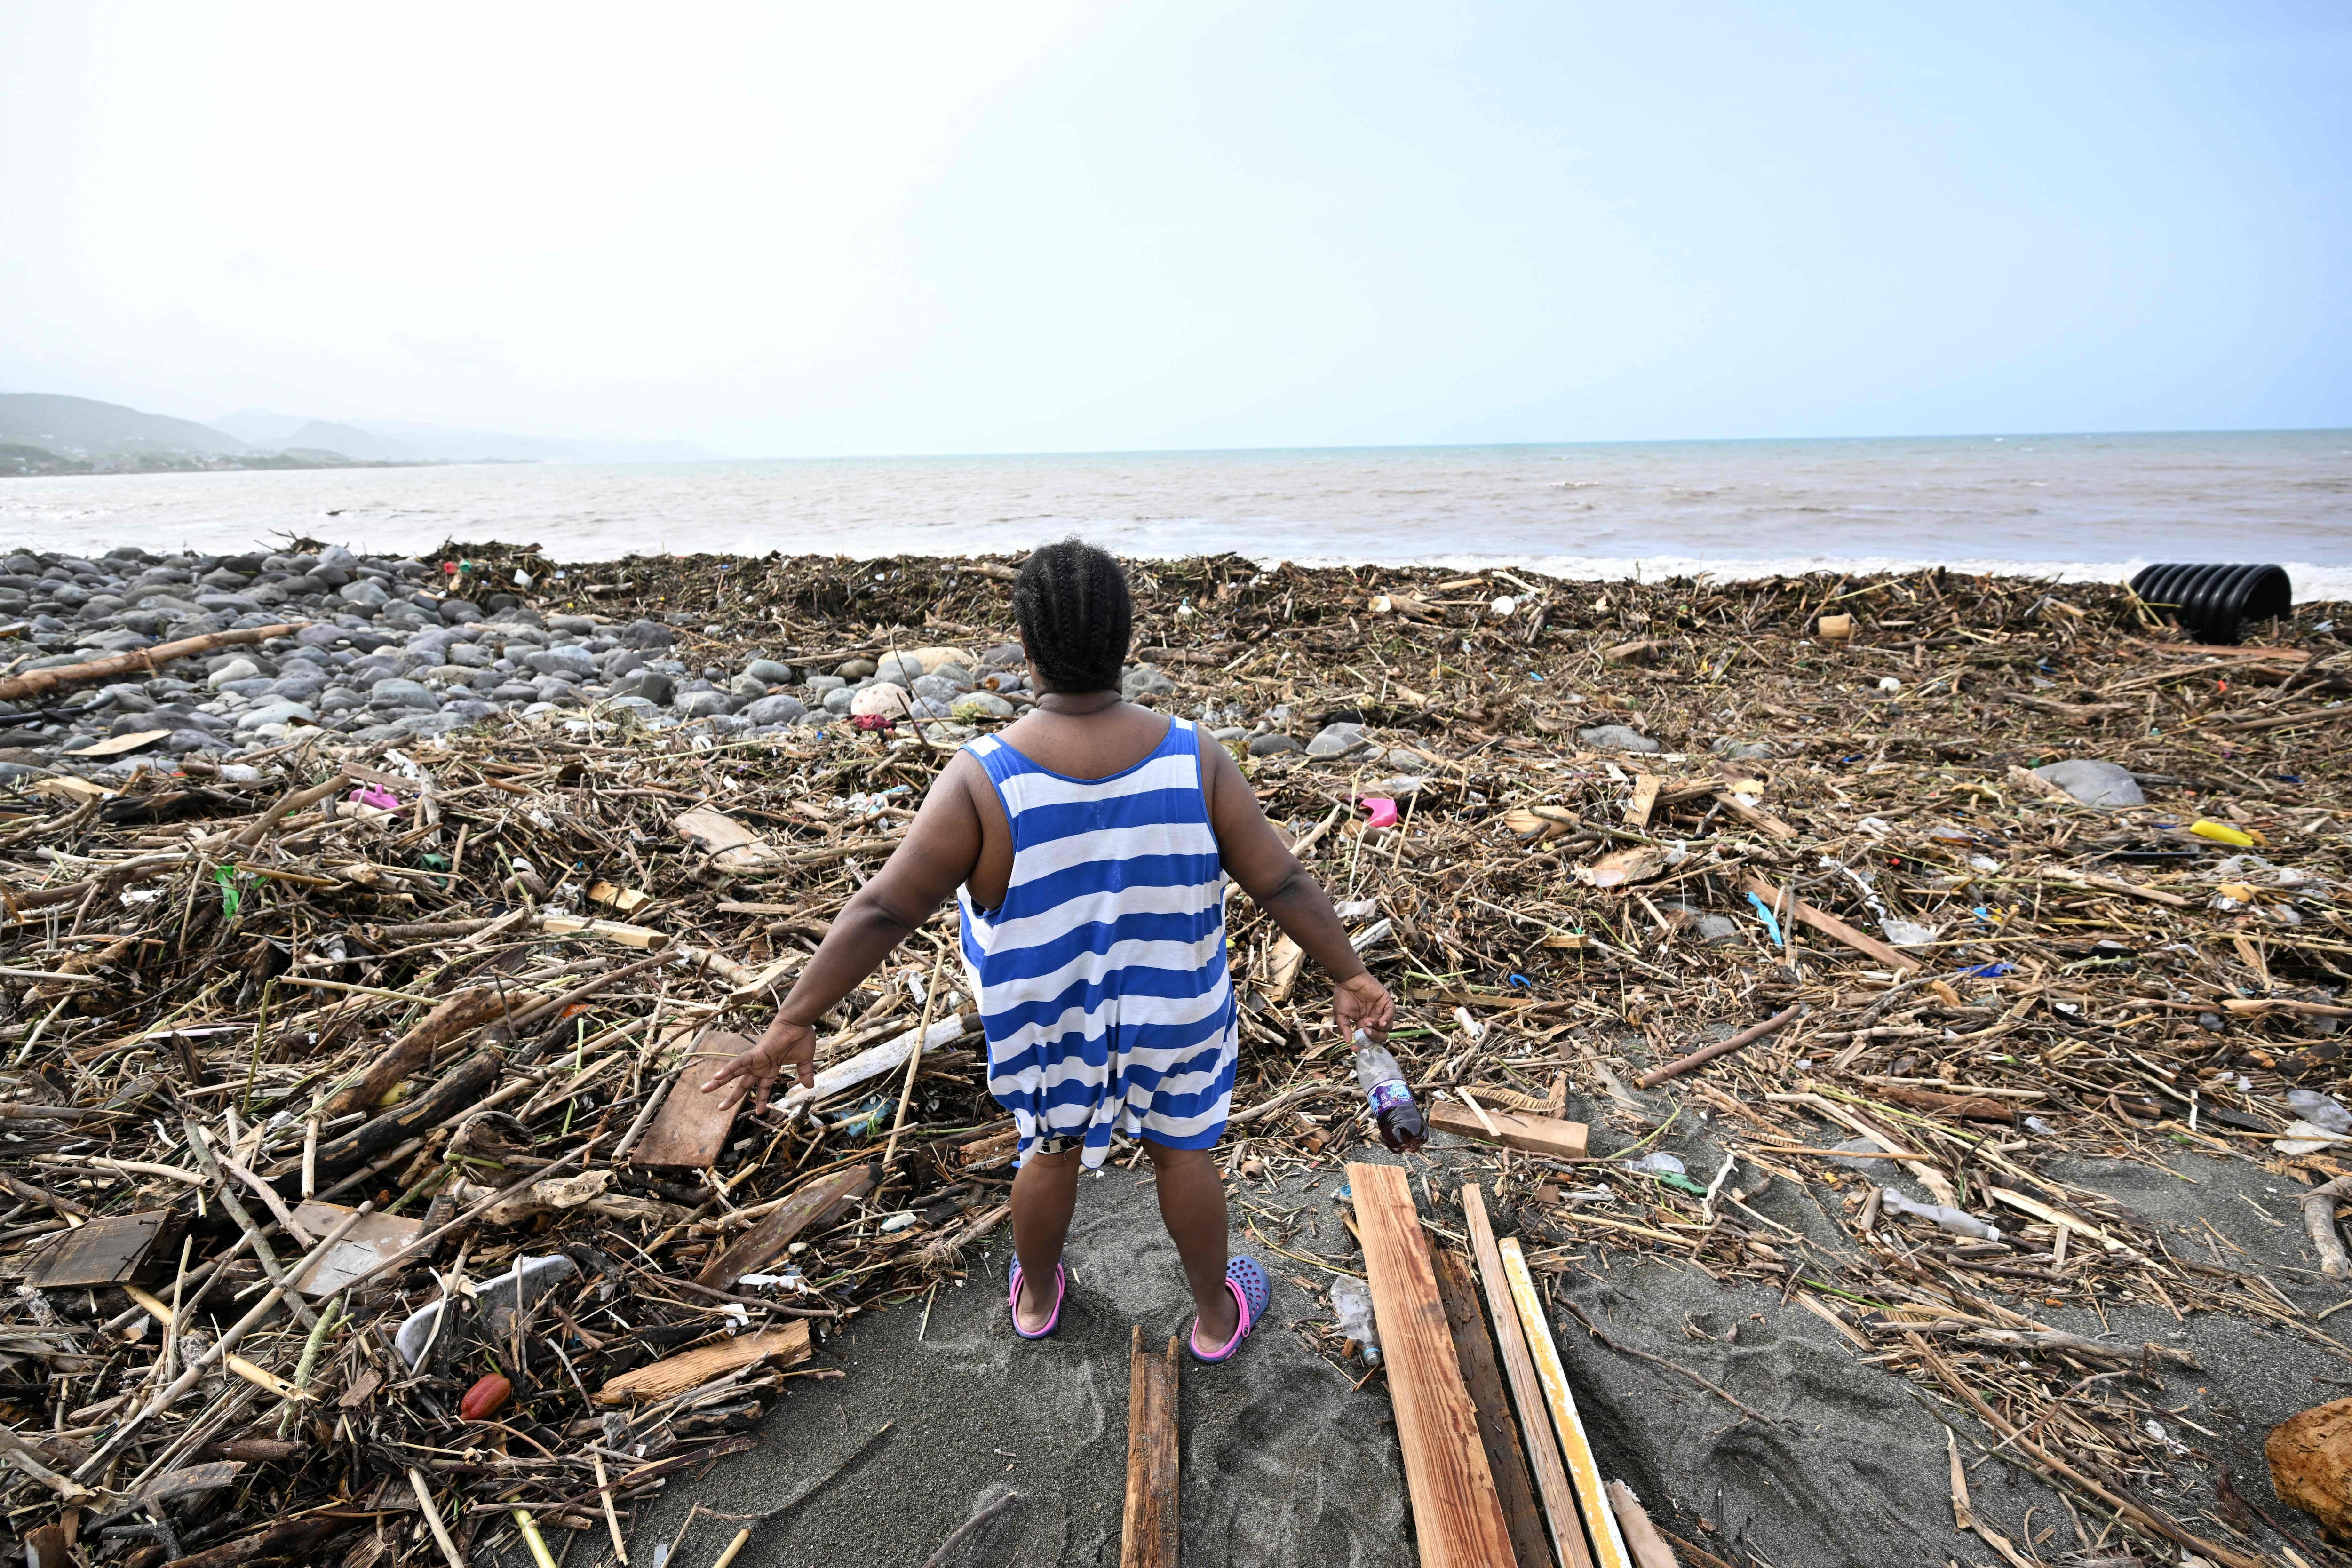 Según los científicos, el huracán Beryl es un fenómeno sin precedentes pero no inesperado, por ser acorde con las expectativas derivadas del calentamiento global. En la foto, playa en Bull Bay, Jamaica, después del paso del huracán Beryl el 4 de julio.